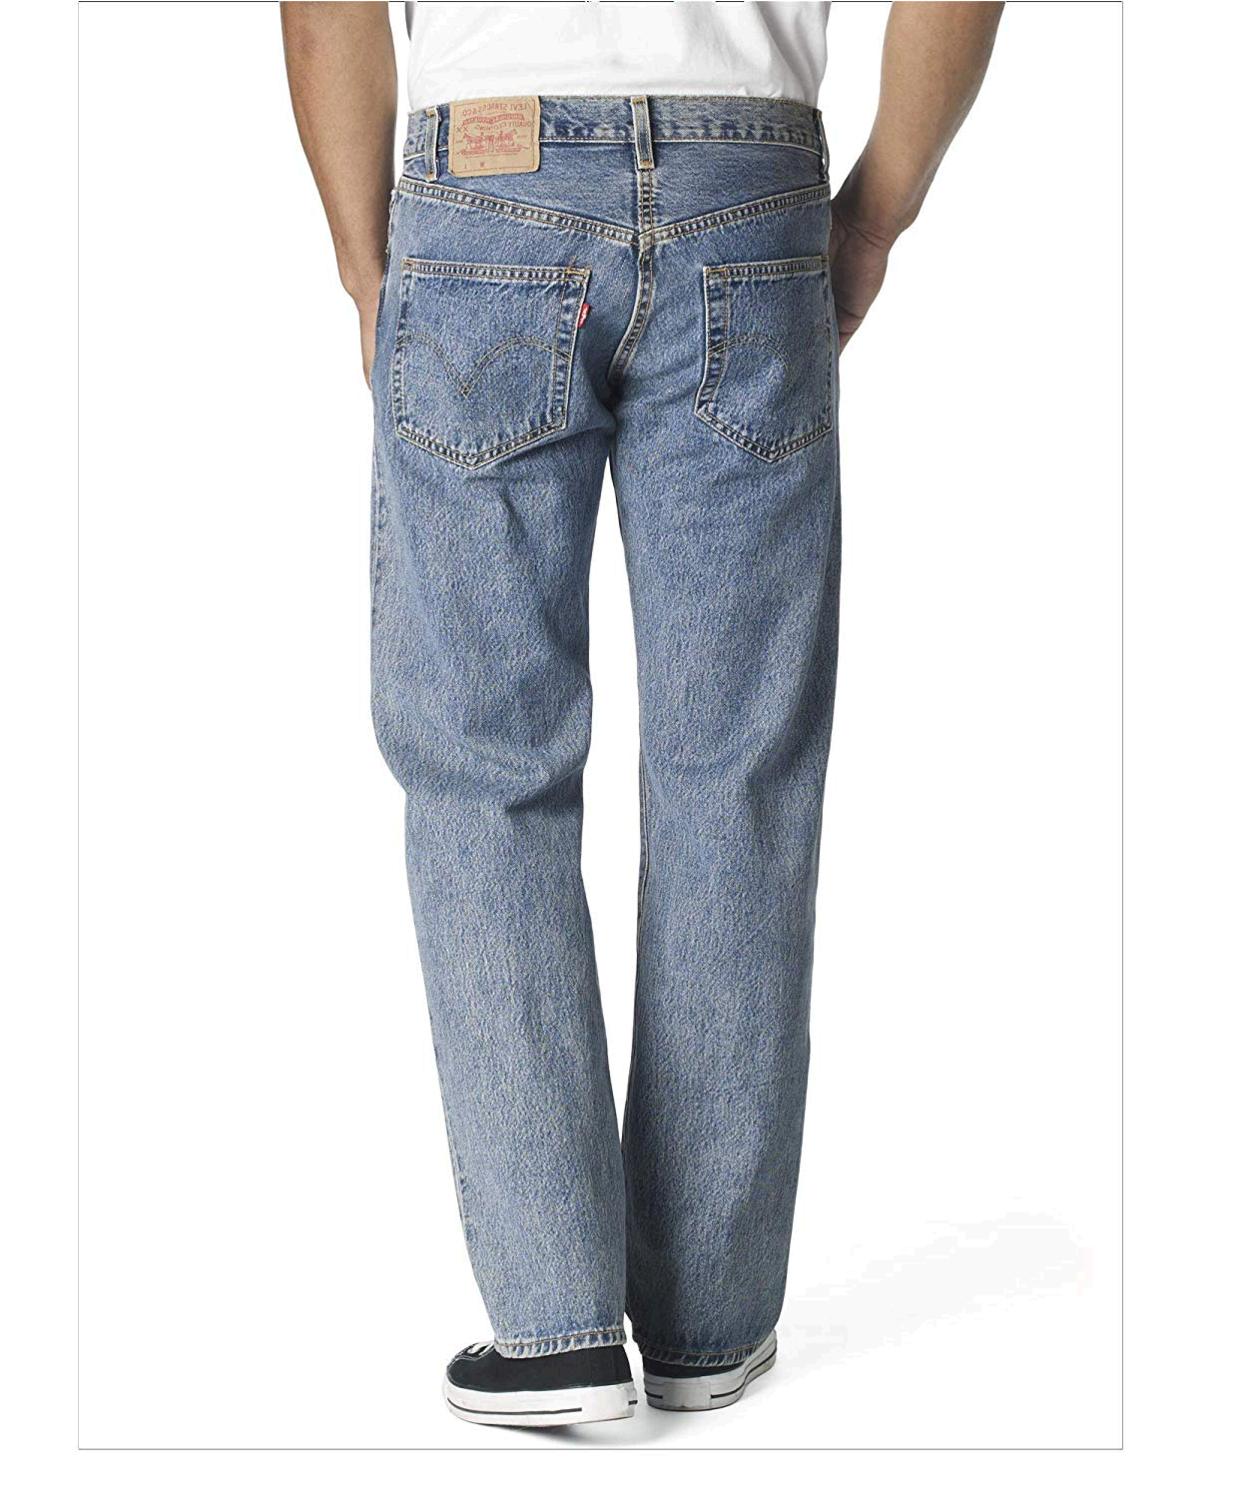 Levi's Men's 501 Original Fit Jean, Medium, Medium Stonewash, Size 34W ...